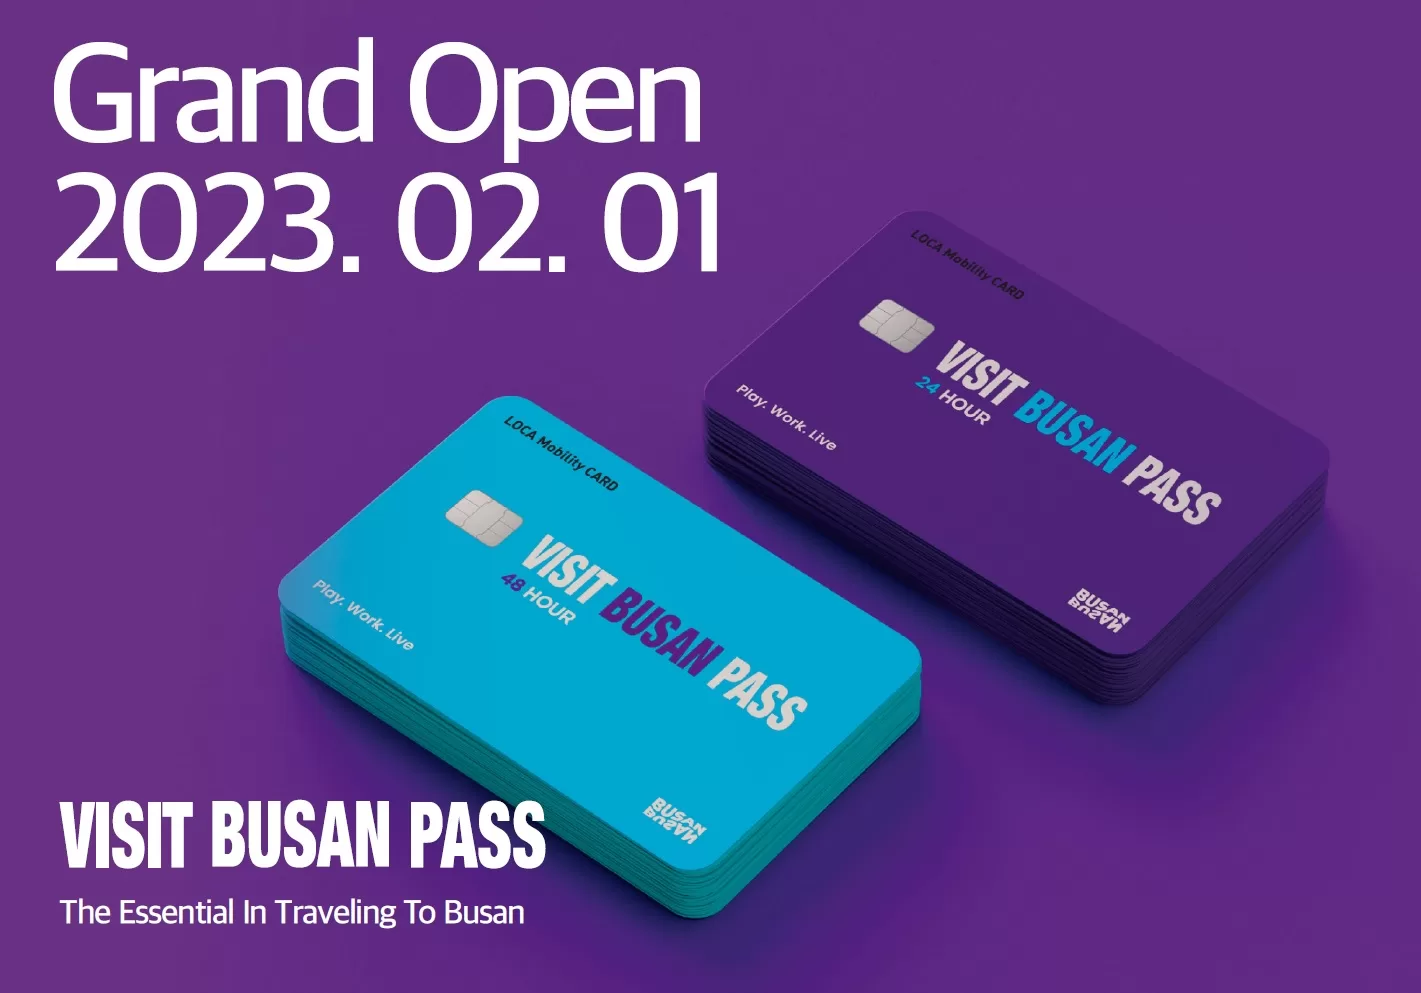 Visit Busan Pass